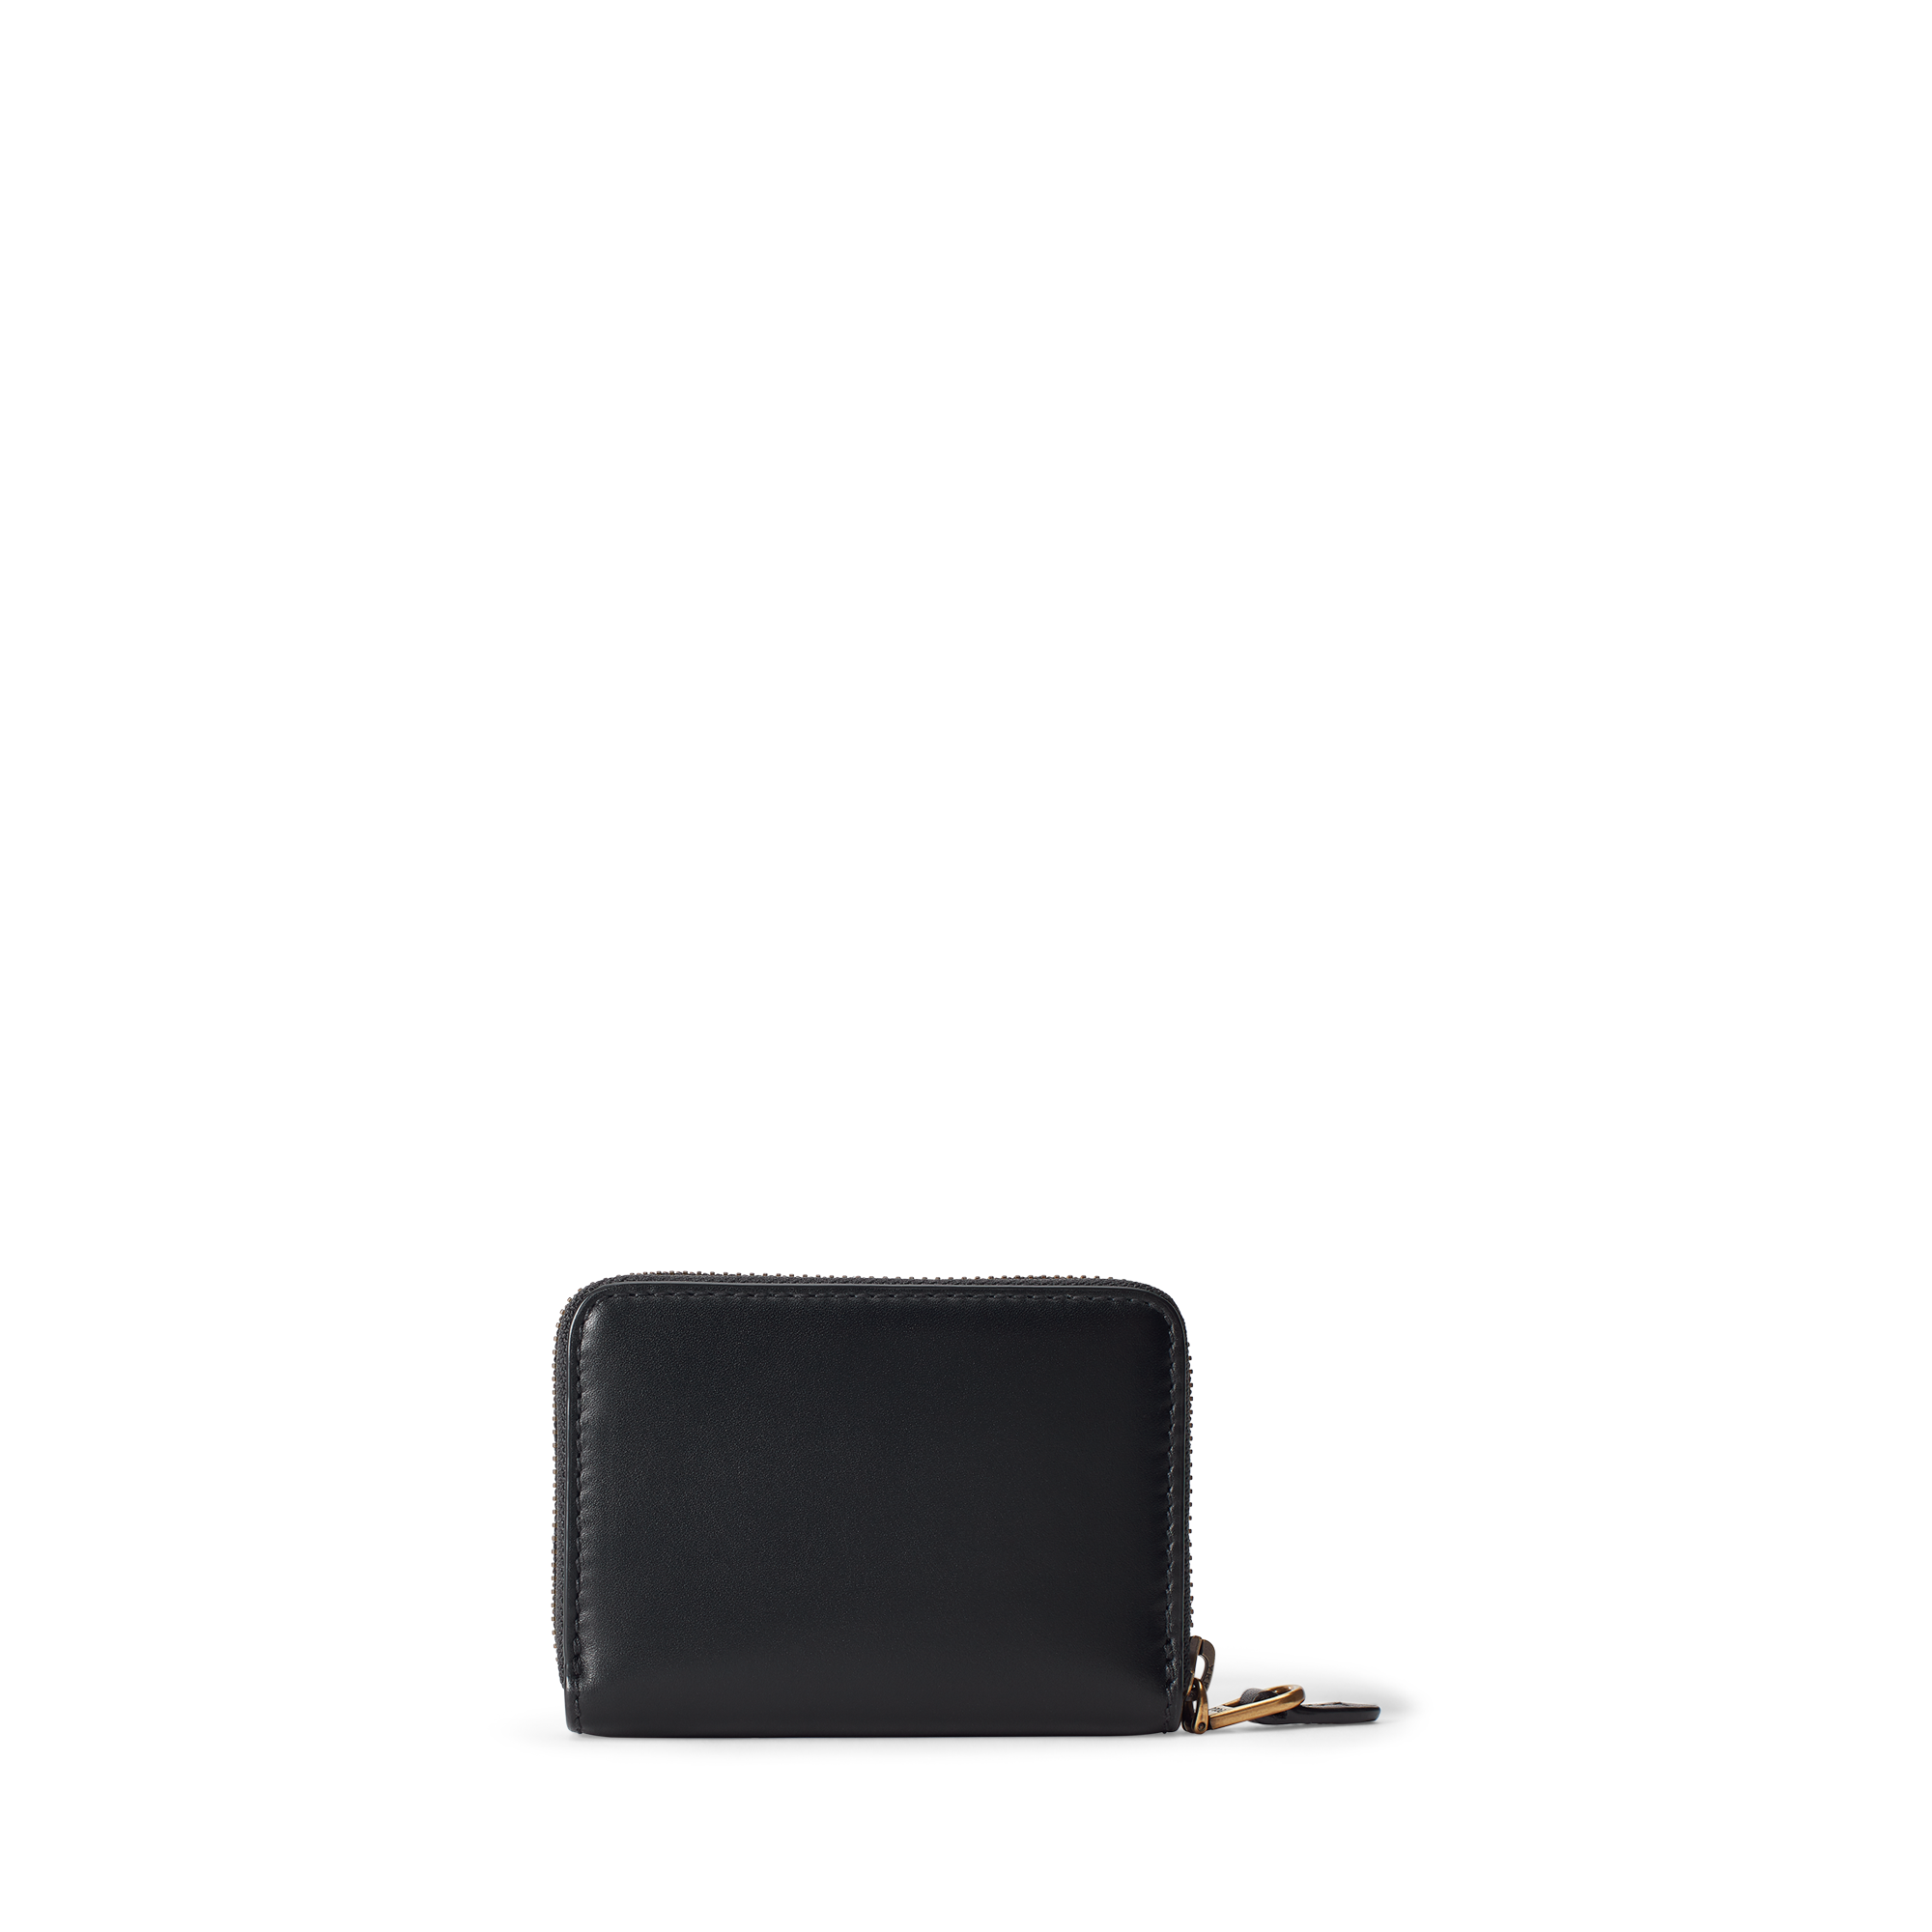 Ralph Lauren Leather Small Zip Wallet. 2